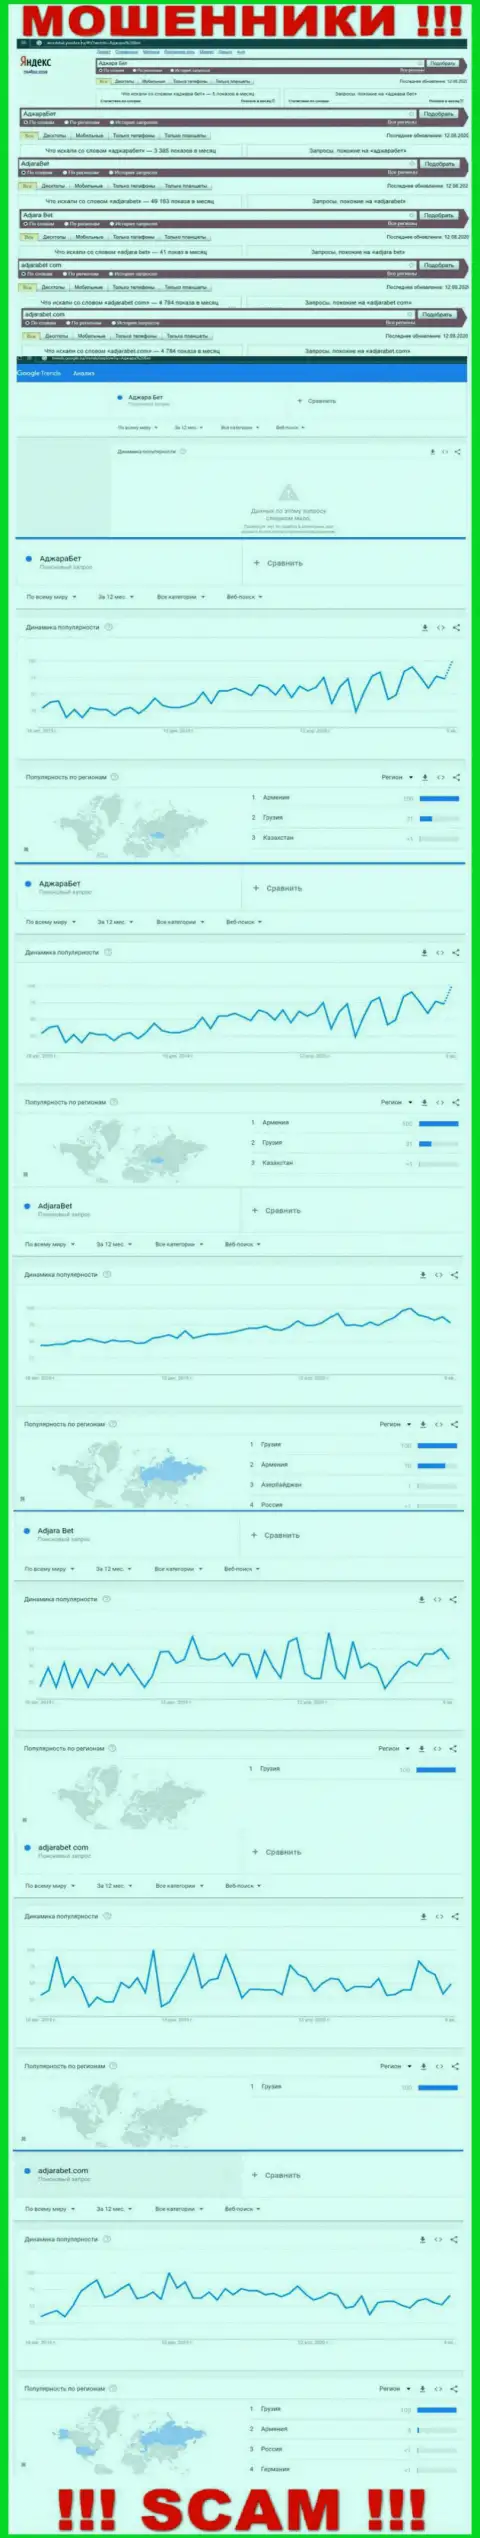 Статистические показатели количества поисковых запросов во всемирной сети интернет по мошенникам Аджара Бет